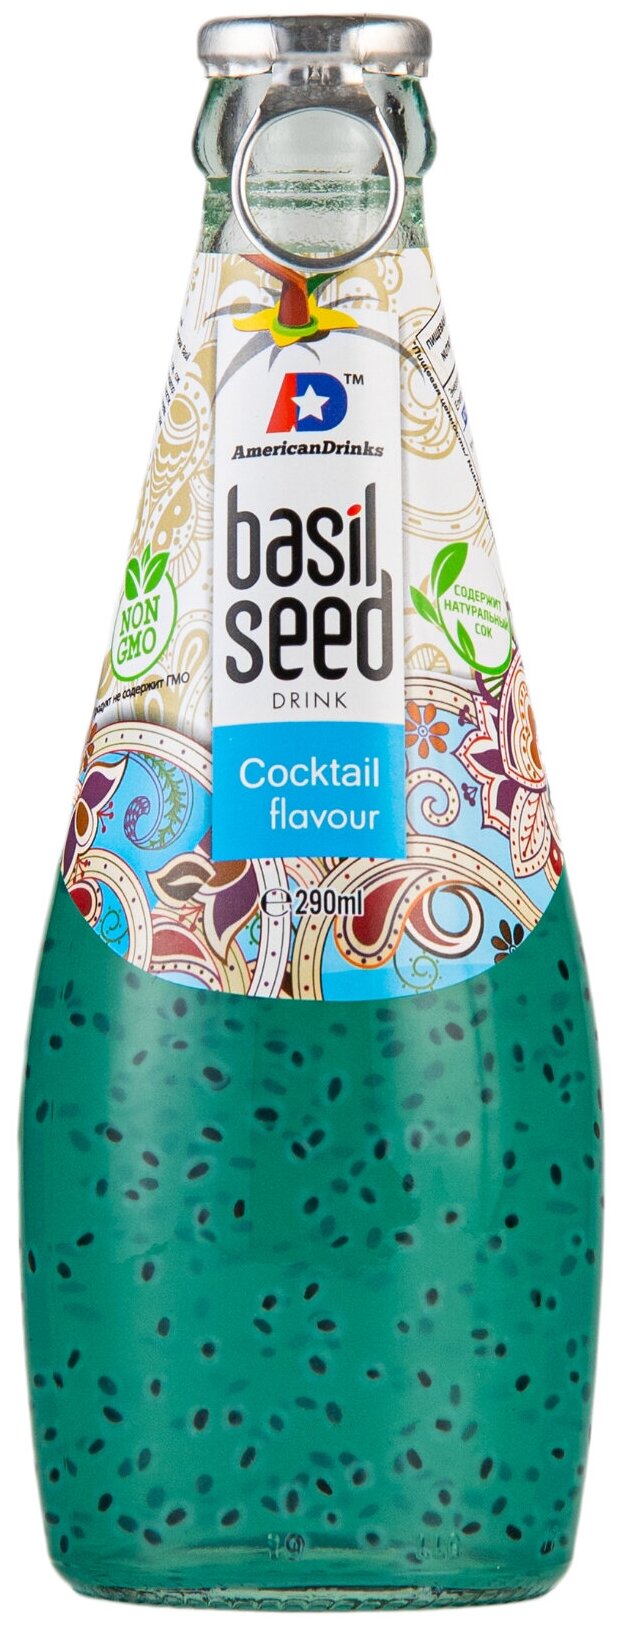 Сокосодержащий напиток American Drinks Basil Seed Cocktail (Экзотический коктейль (Ананас и личи)) стеклянная бутылка 290 мл., упаковка - 24 штуки - фотография № 2